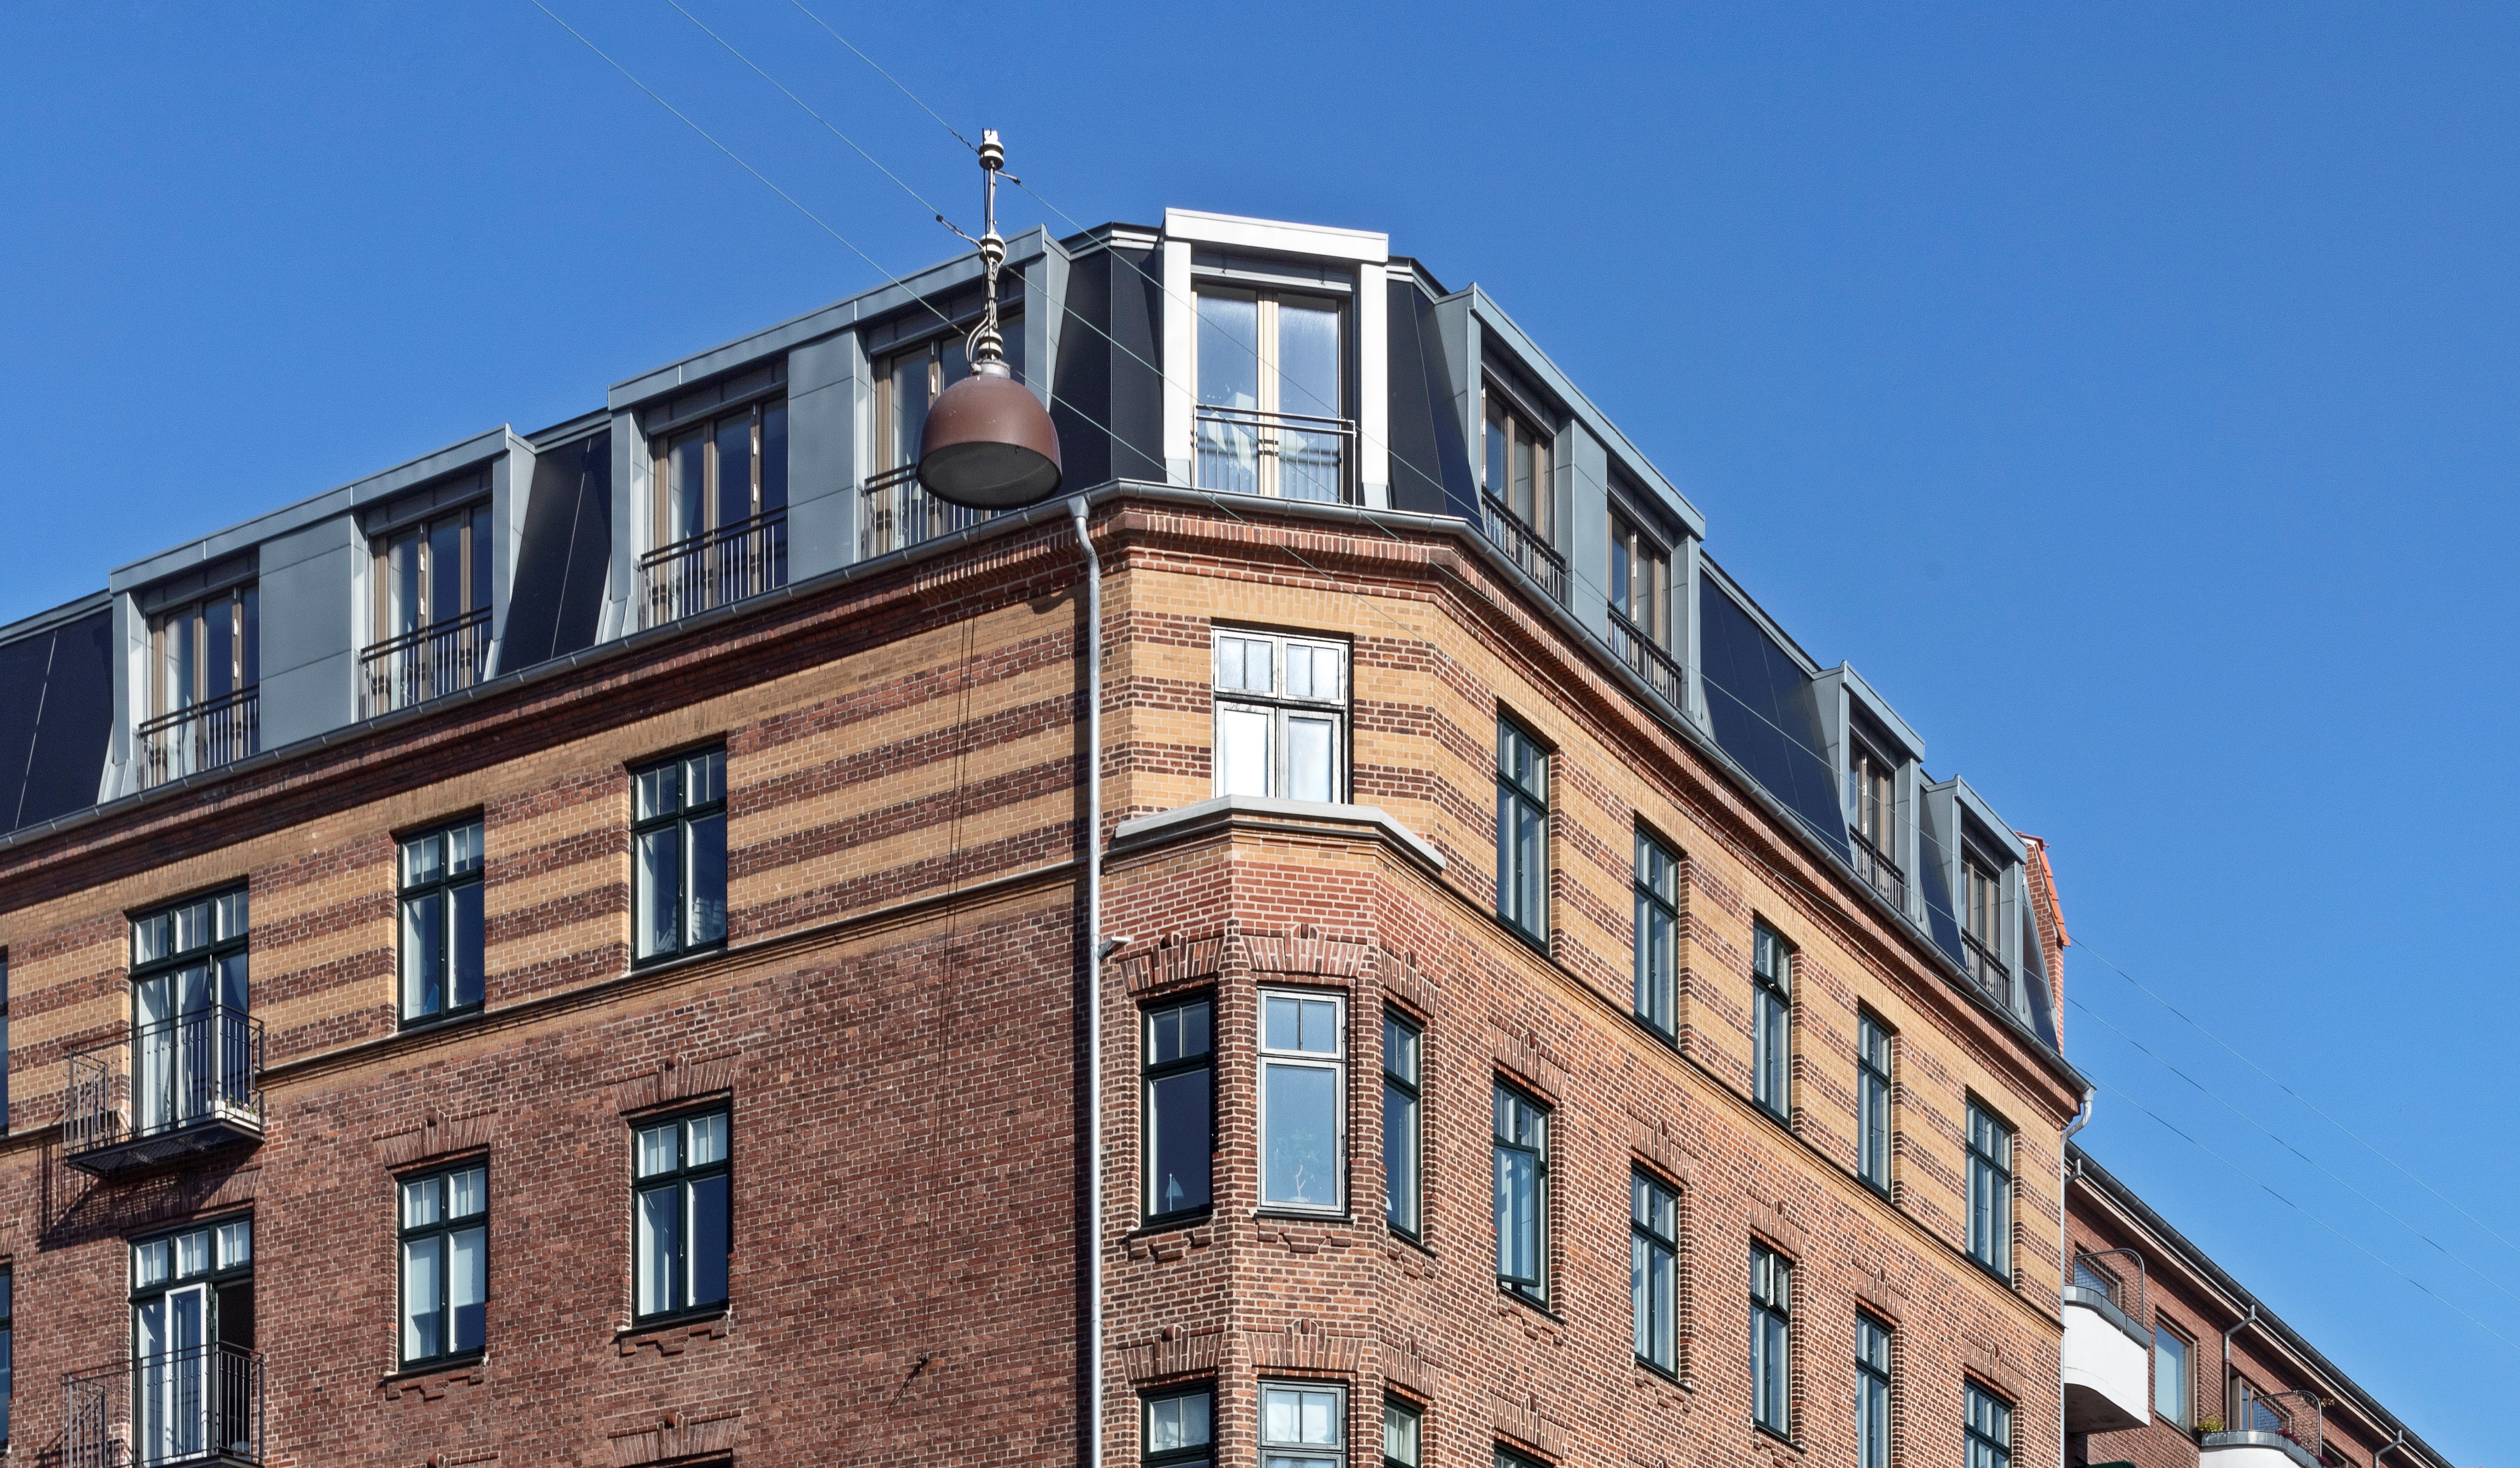 Ældre etageejendom i Ryesgade, København, der blev brugt som testbygning i projektet. Foto: Dorte Krogh.